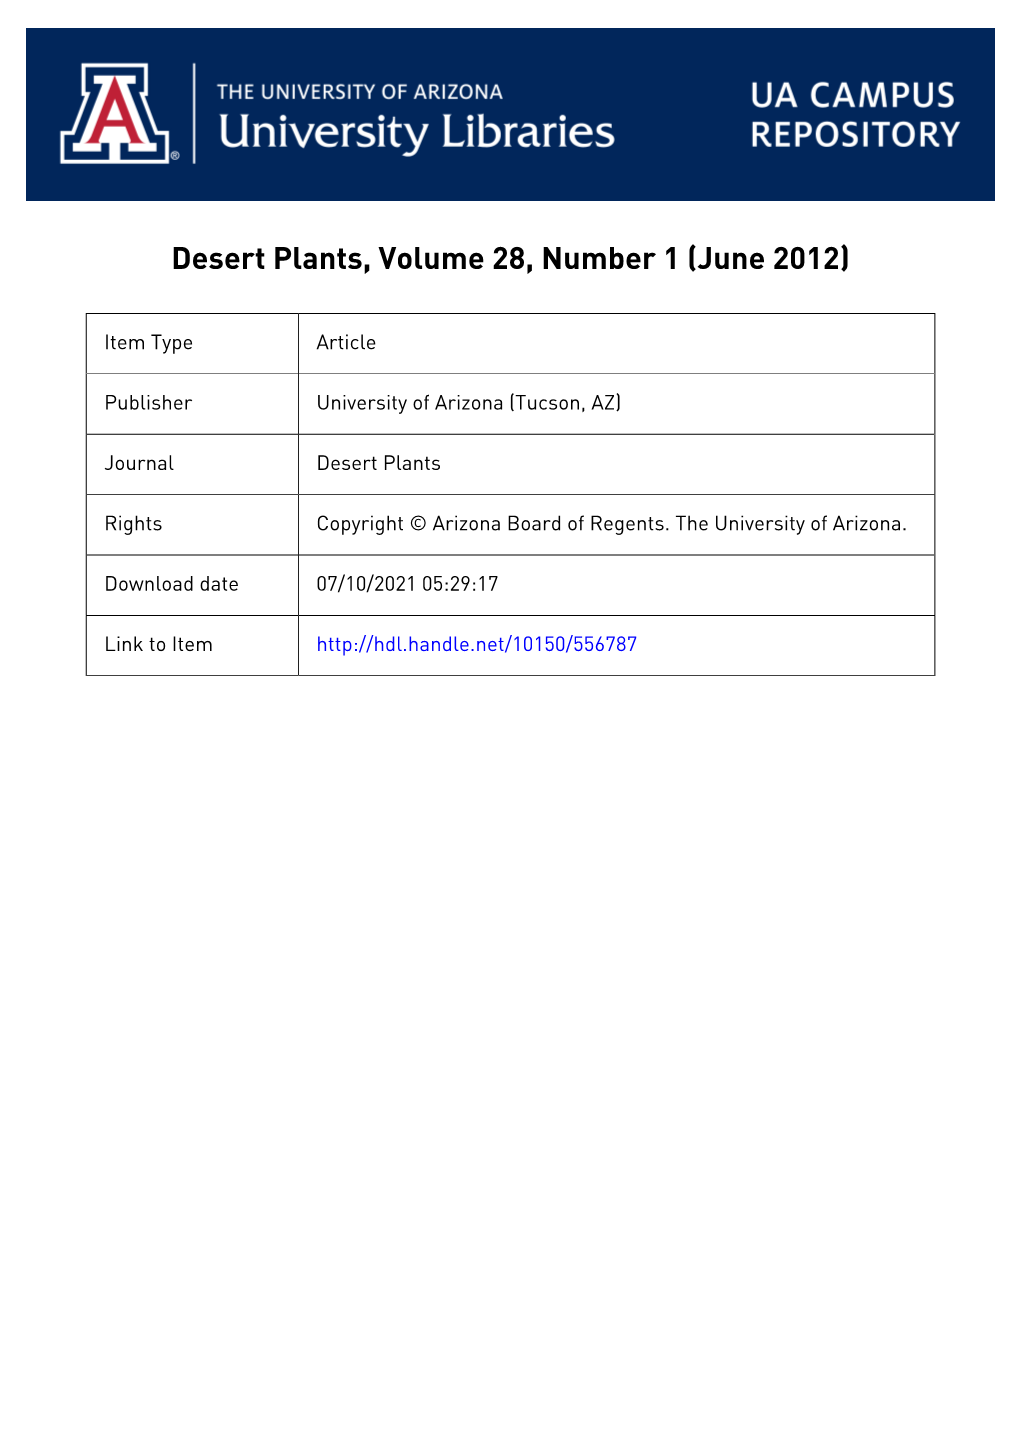 Desert Plants, Volume 28, Number 1 (June 2012)